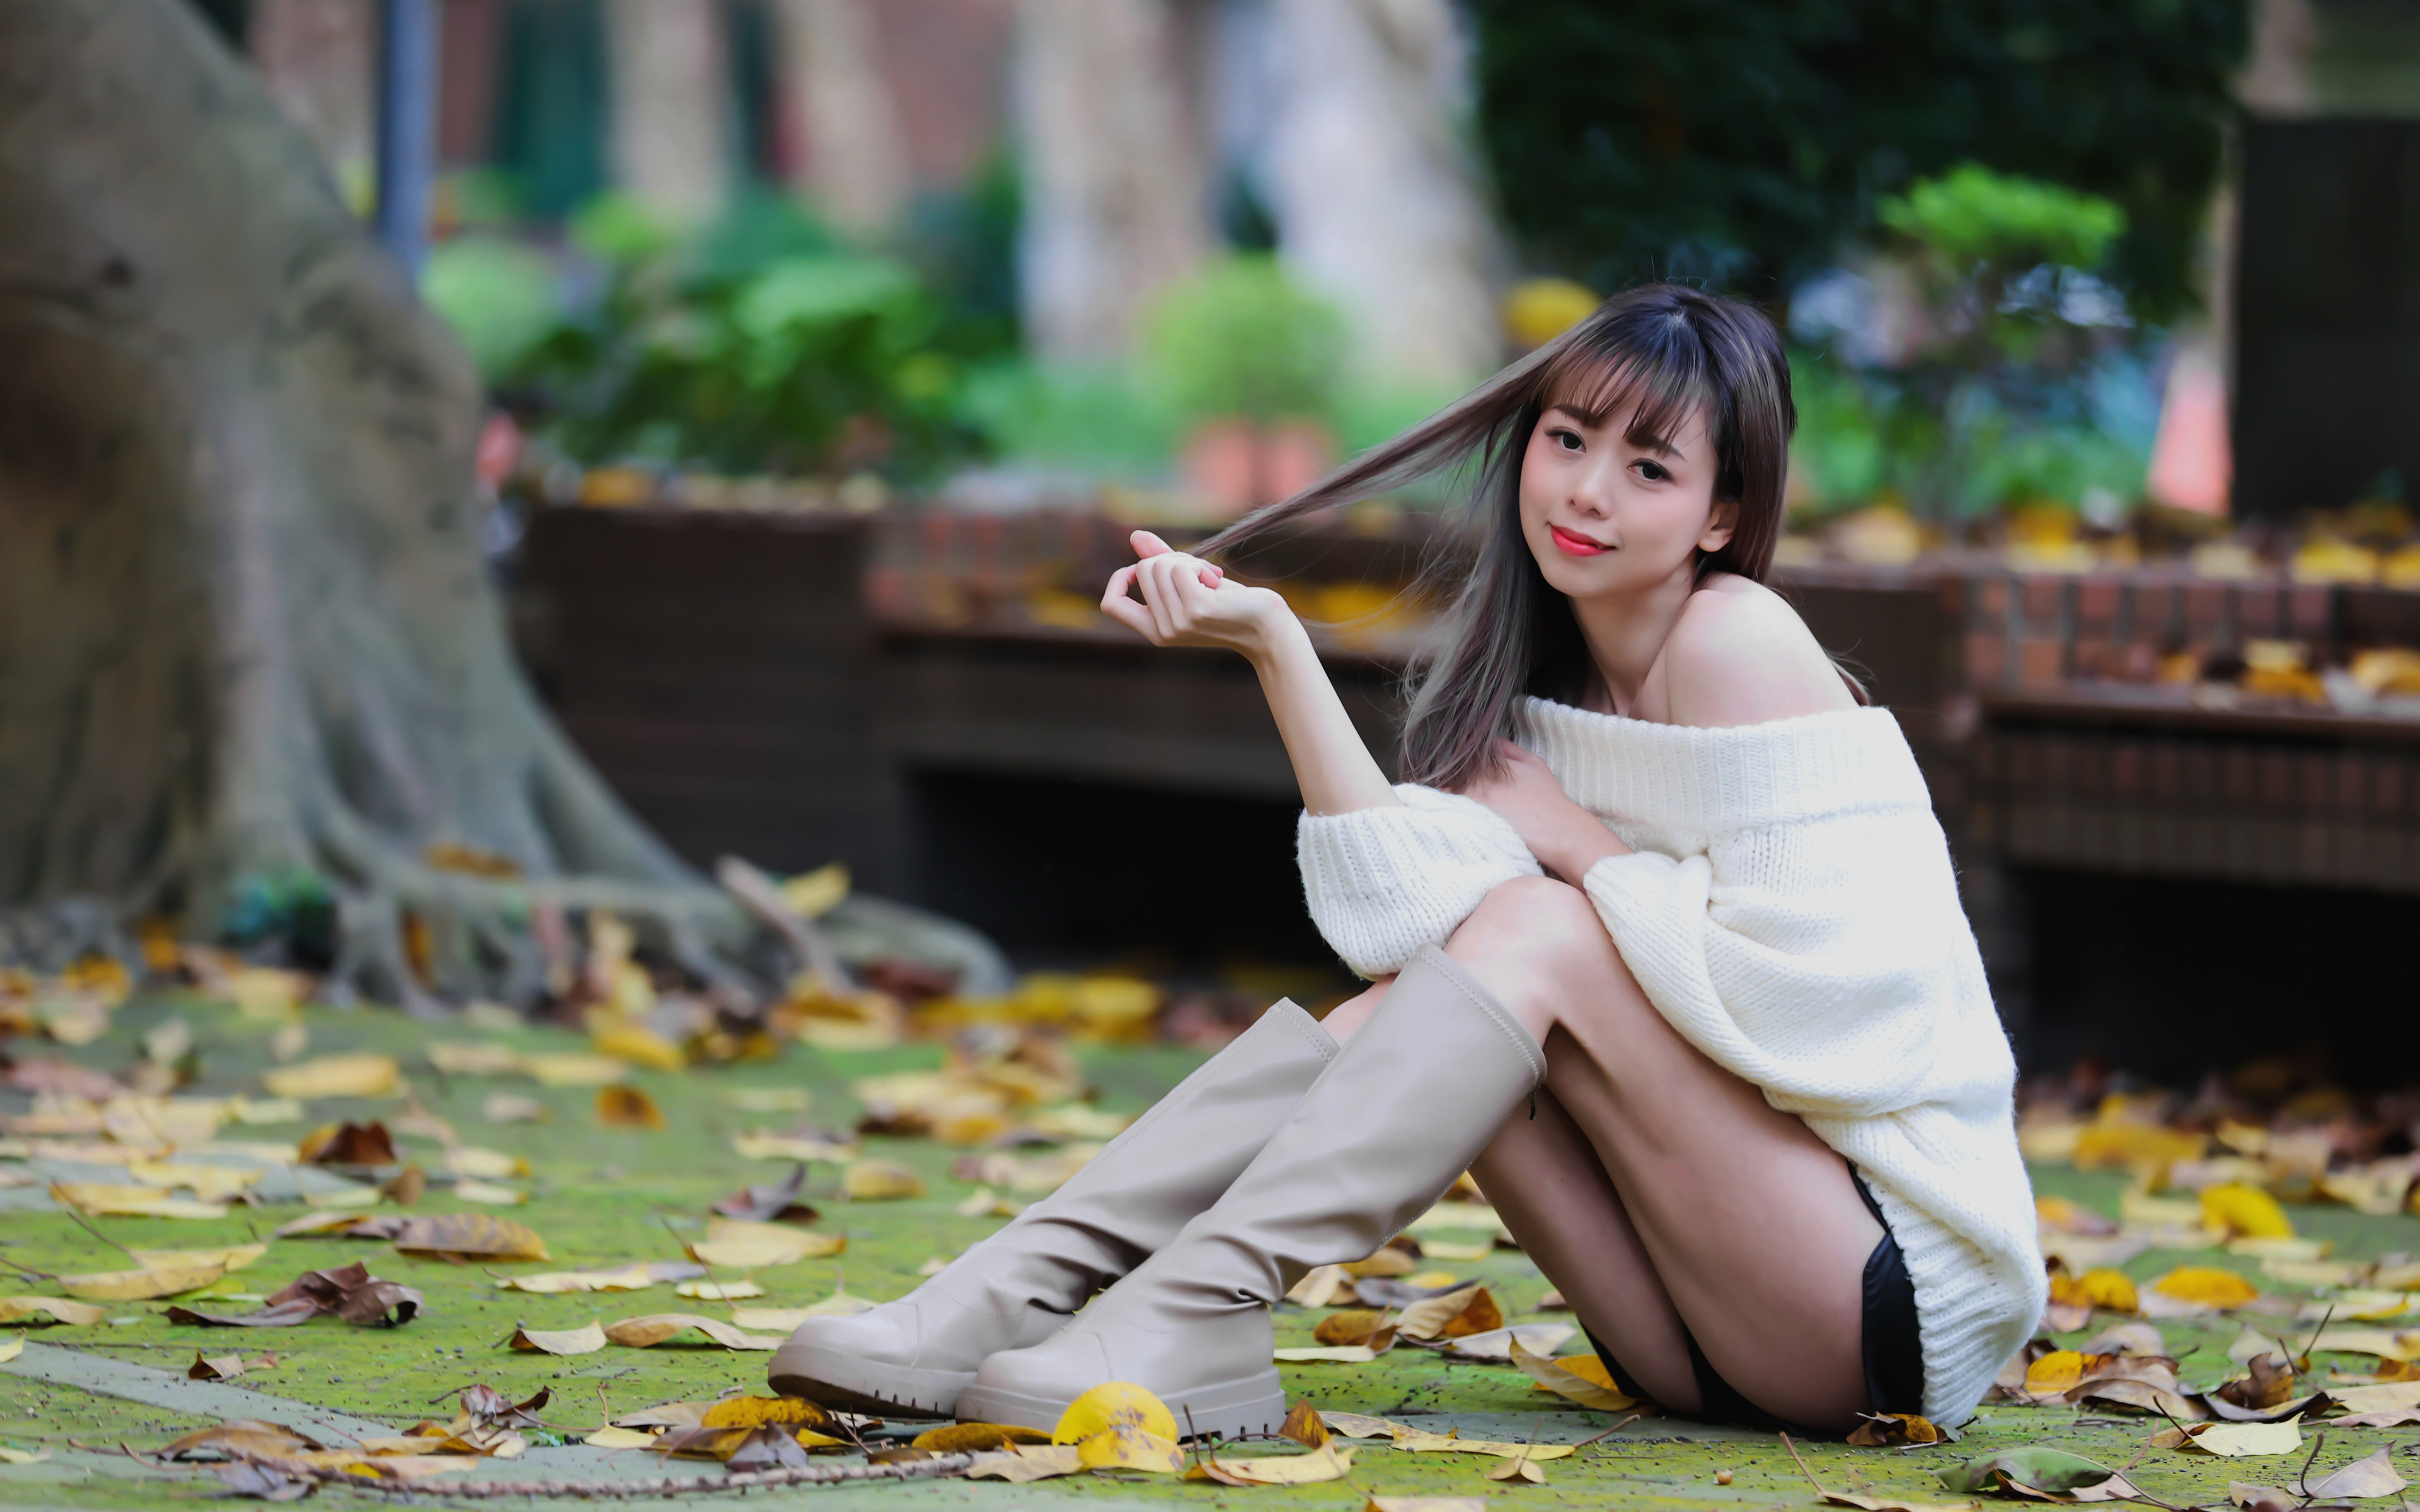 Bilder Stiefel posiert Mädchens Bein Asiatische Sweatshirt sitzt 3840x2400 Pose junge frau junge Frauen Asiaten asiatisches sitzen Sitzend